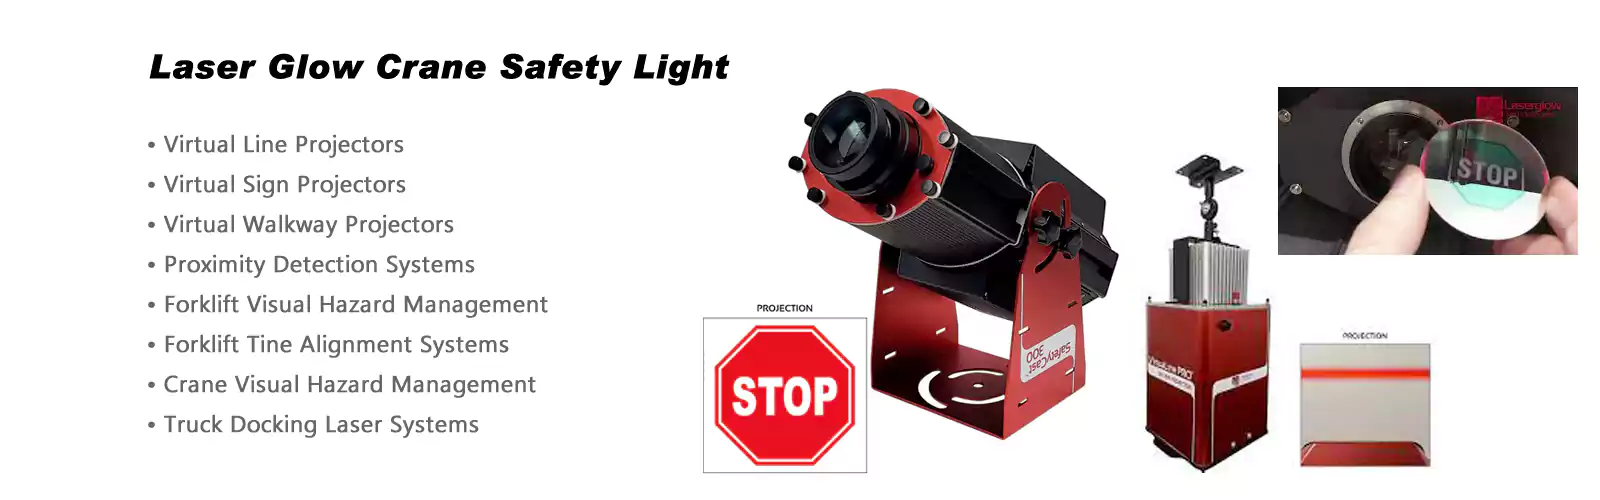 Laser Glow Crane Safety Lights